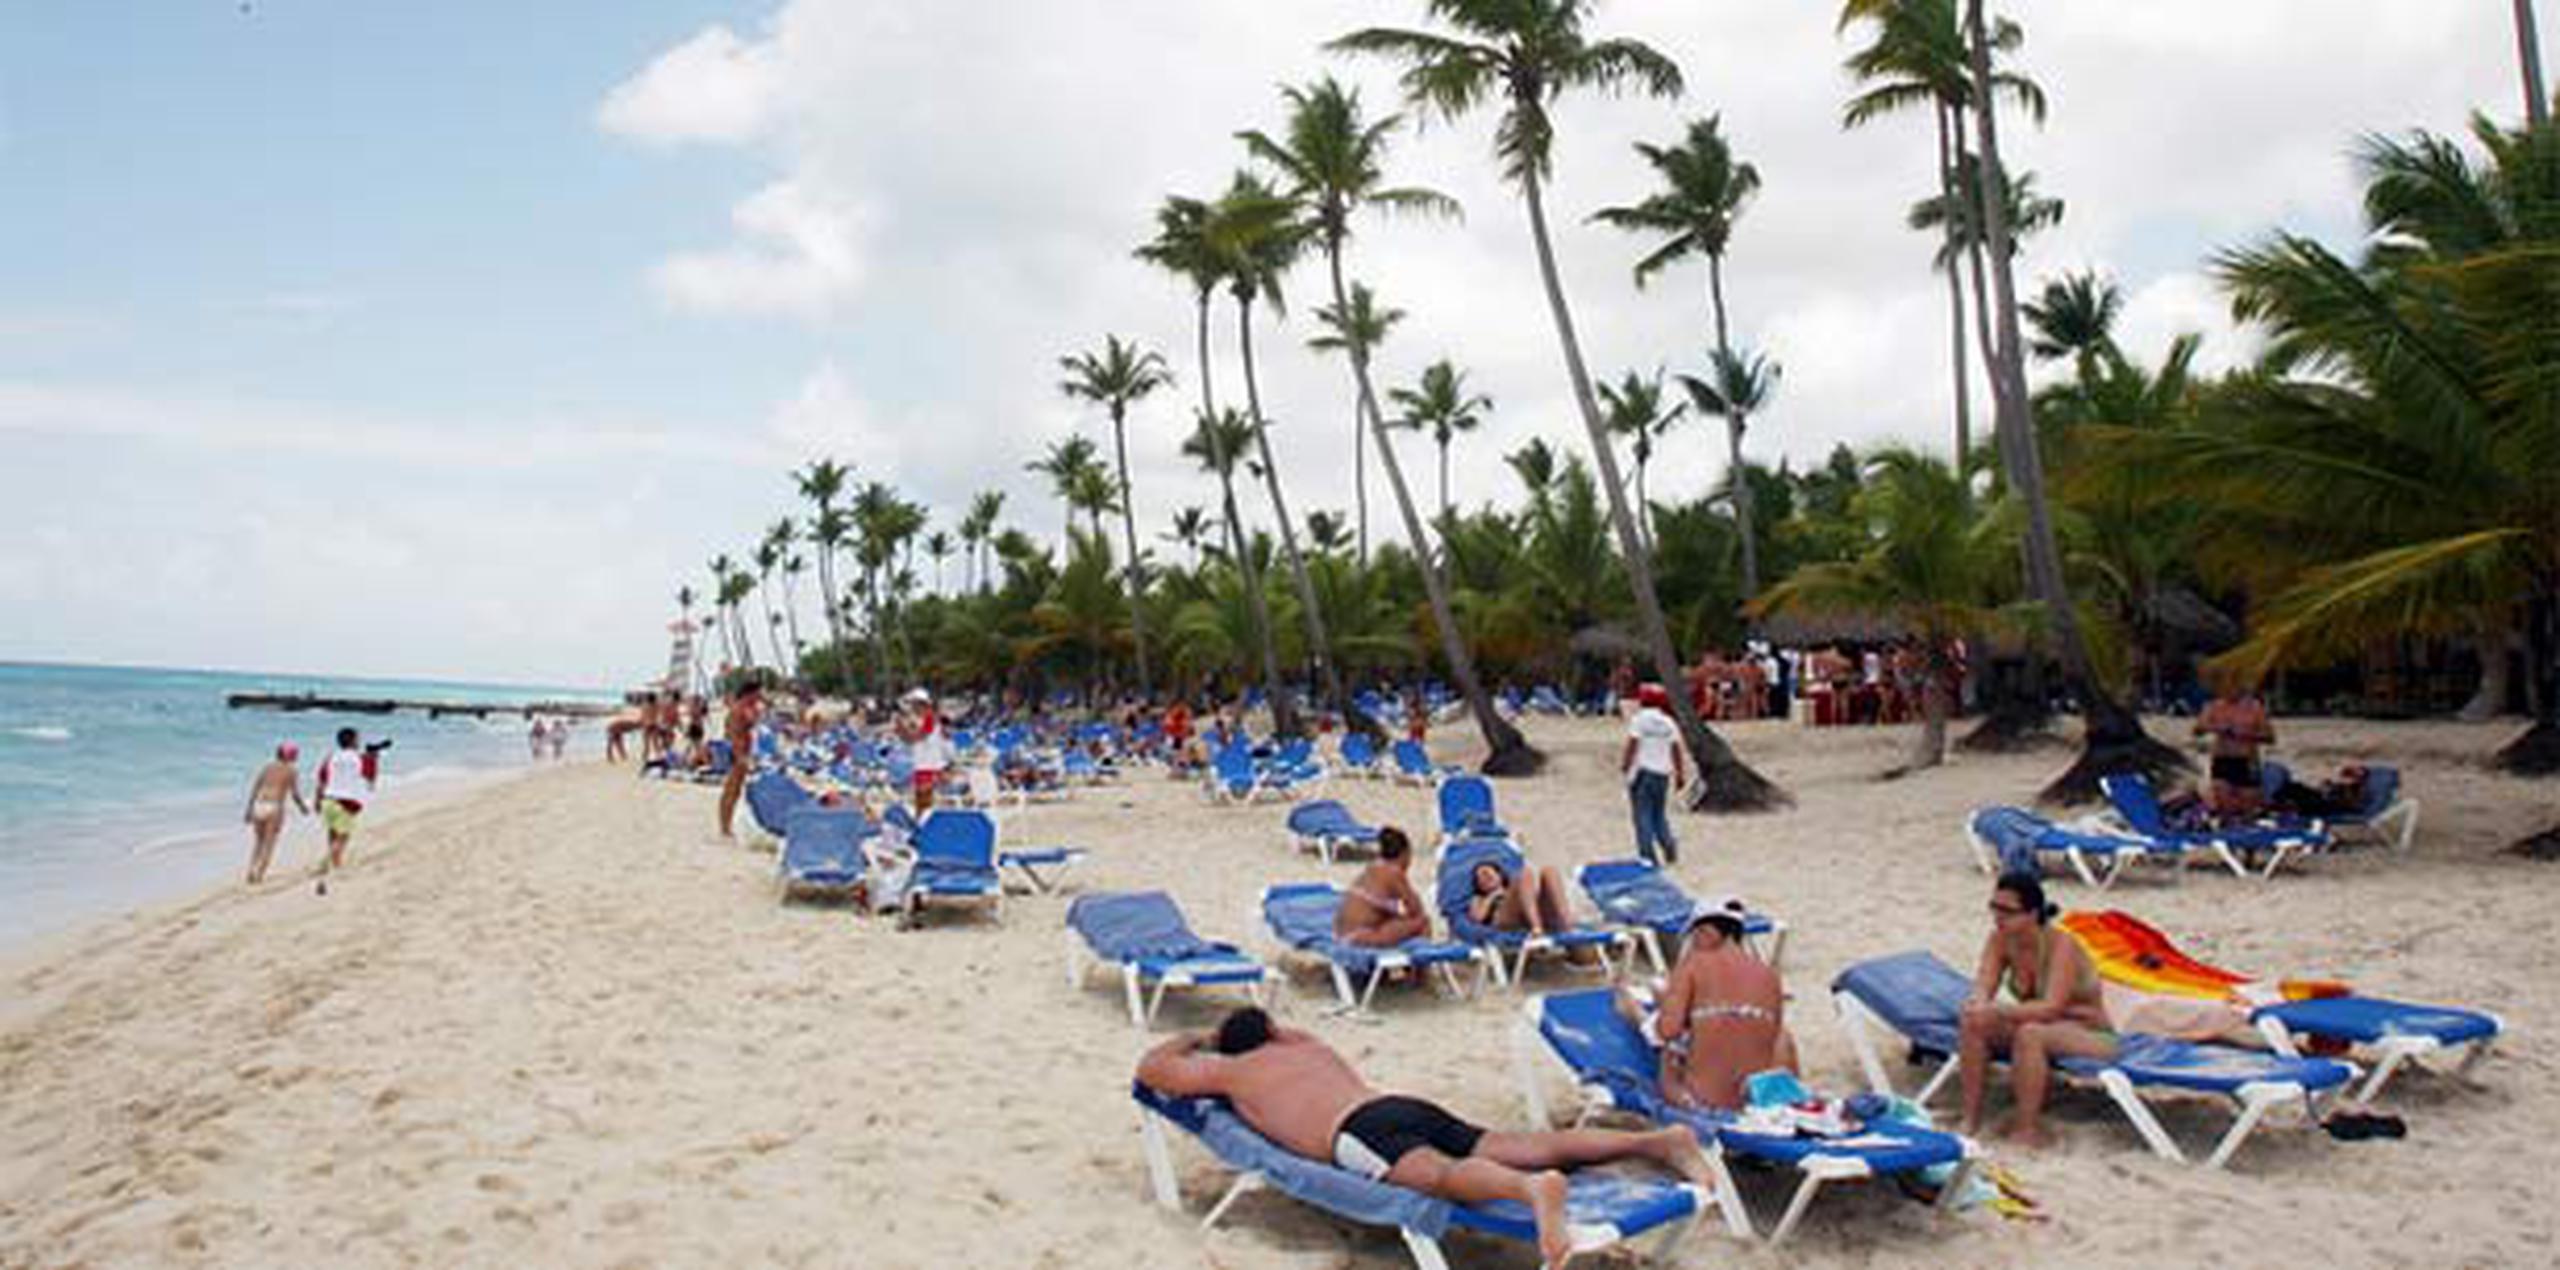 En el caso de Punta Cana, las vacaciones para esta semana pueden salir entre $800 a $900, con la comida incluida. (Archivo)